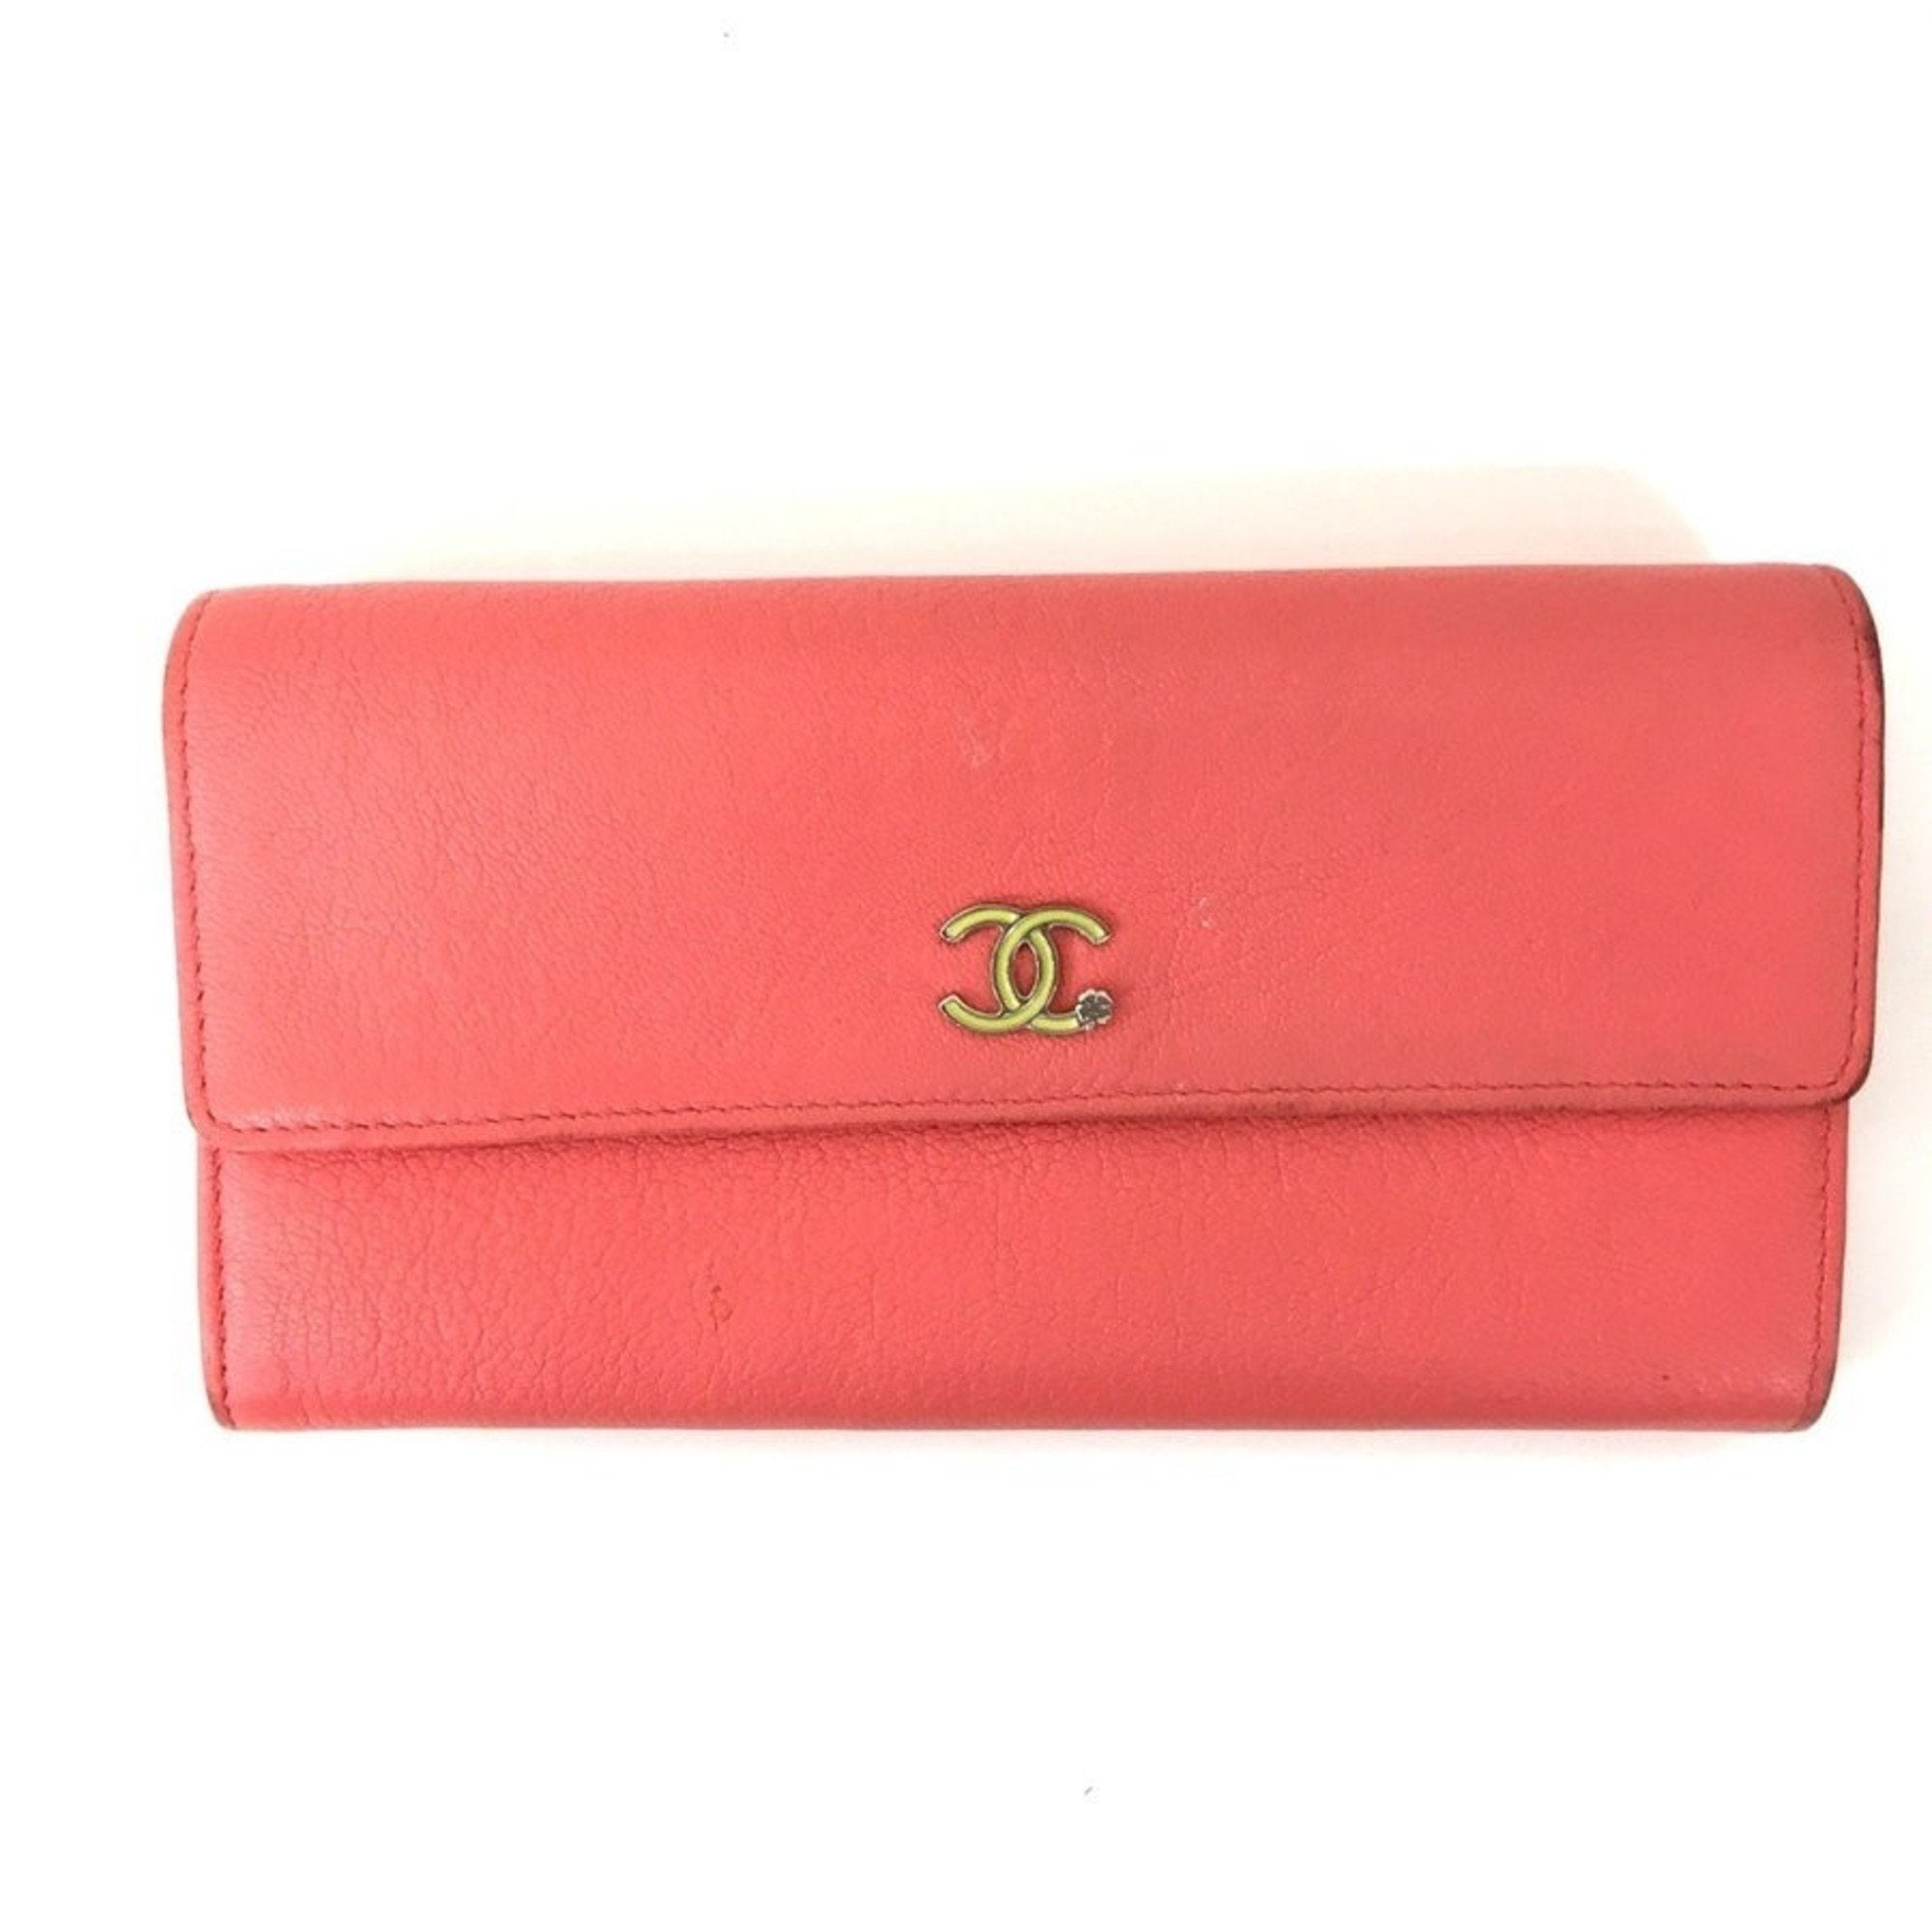 CHANEL ZIP wallet pink